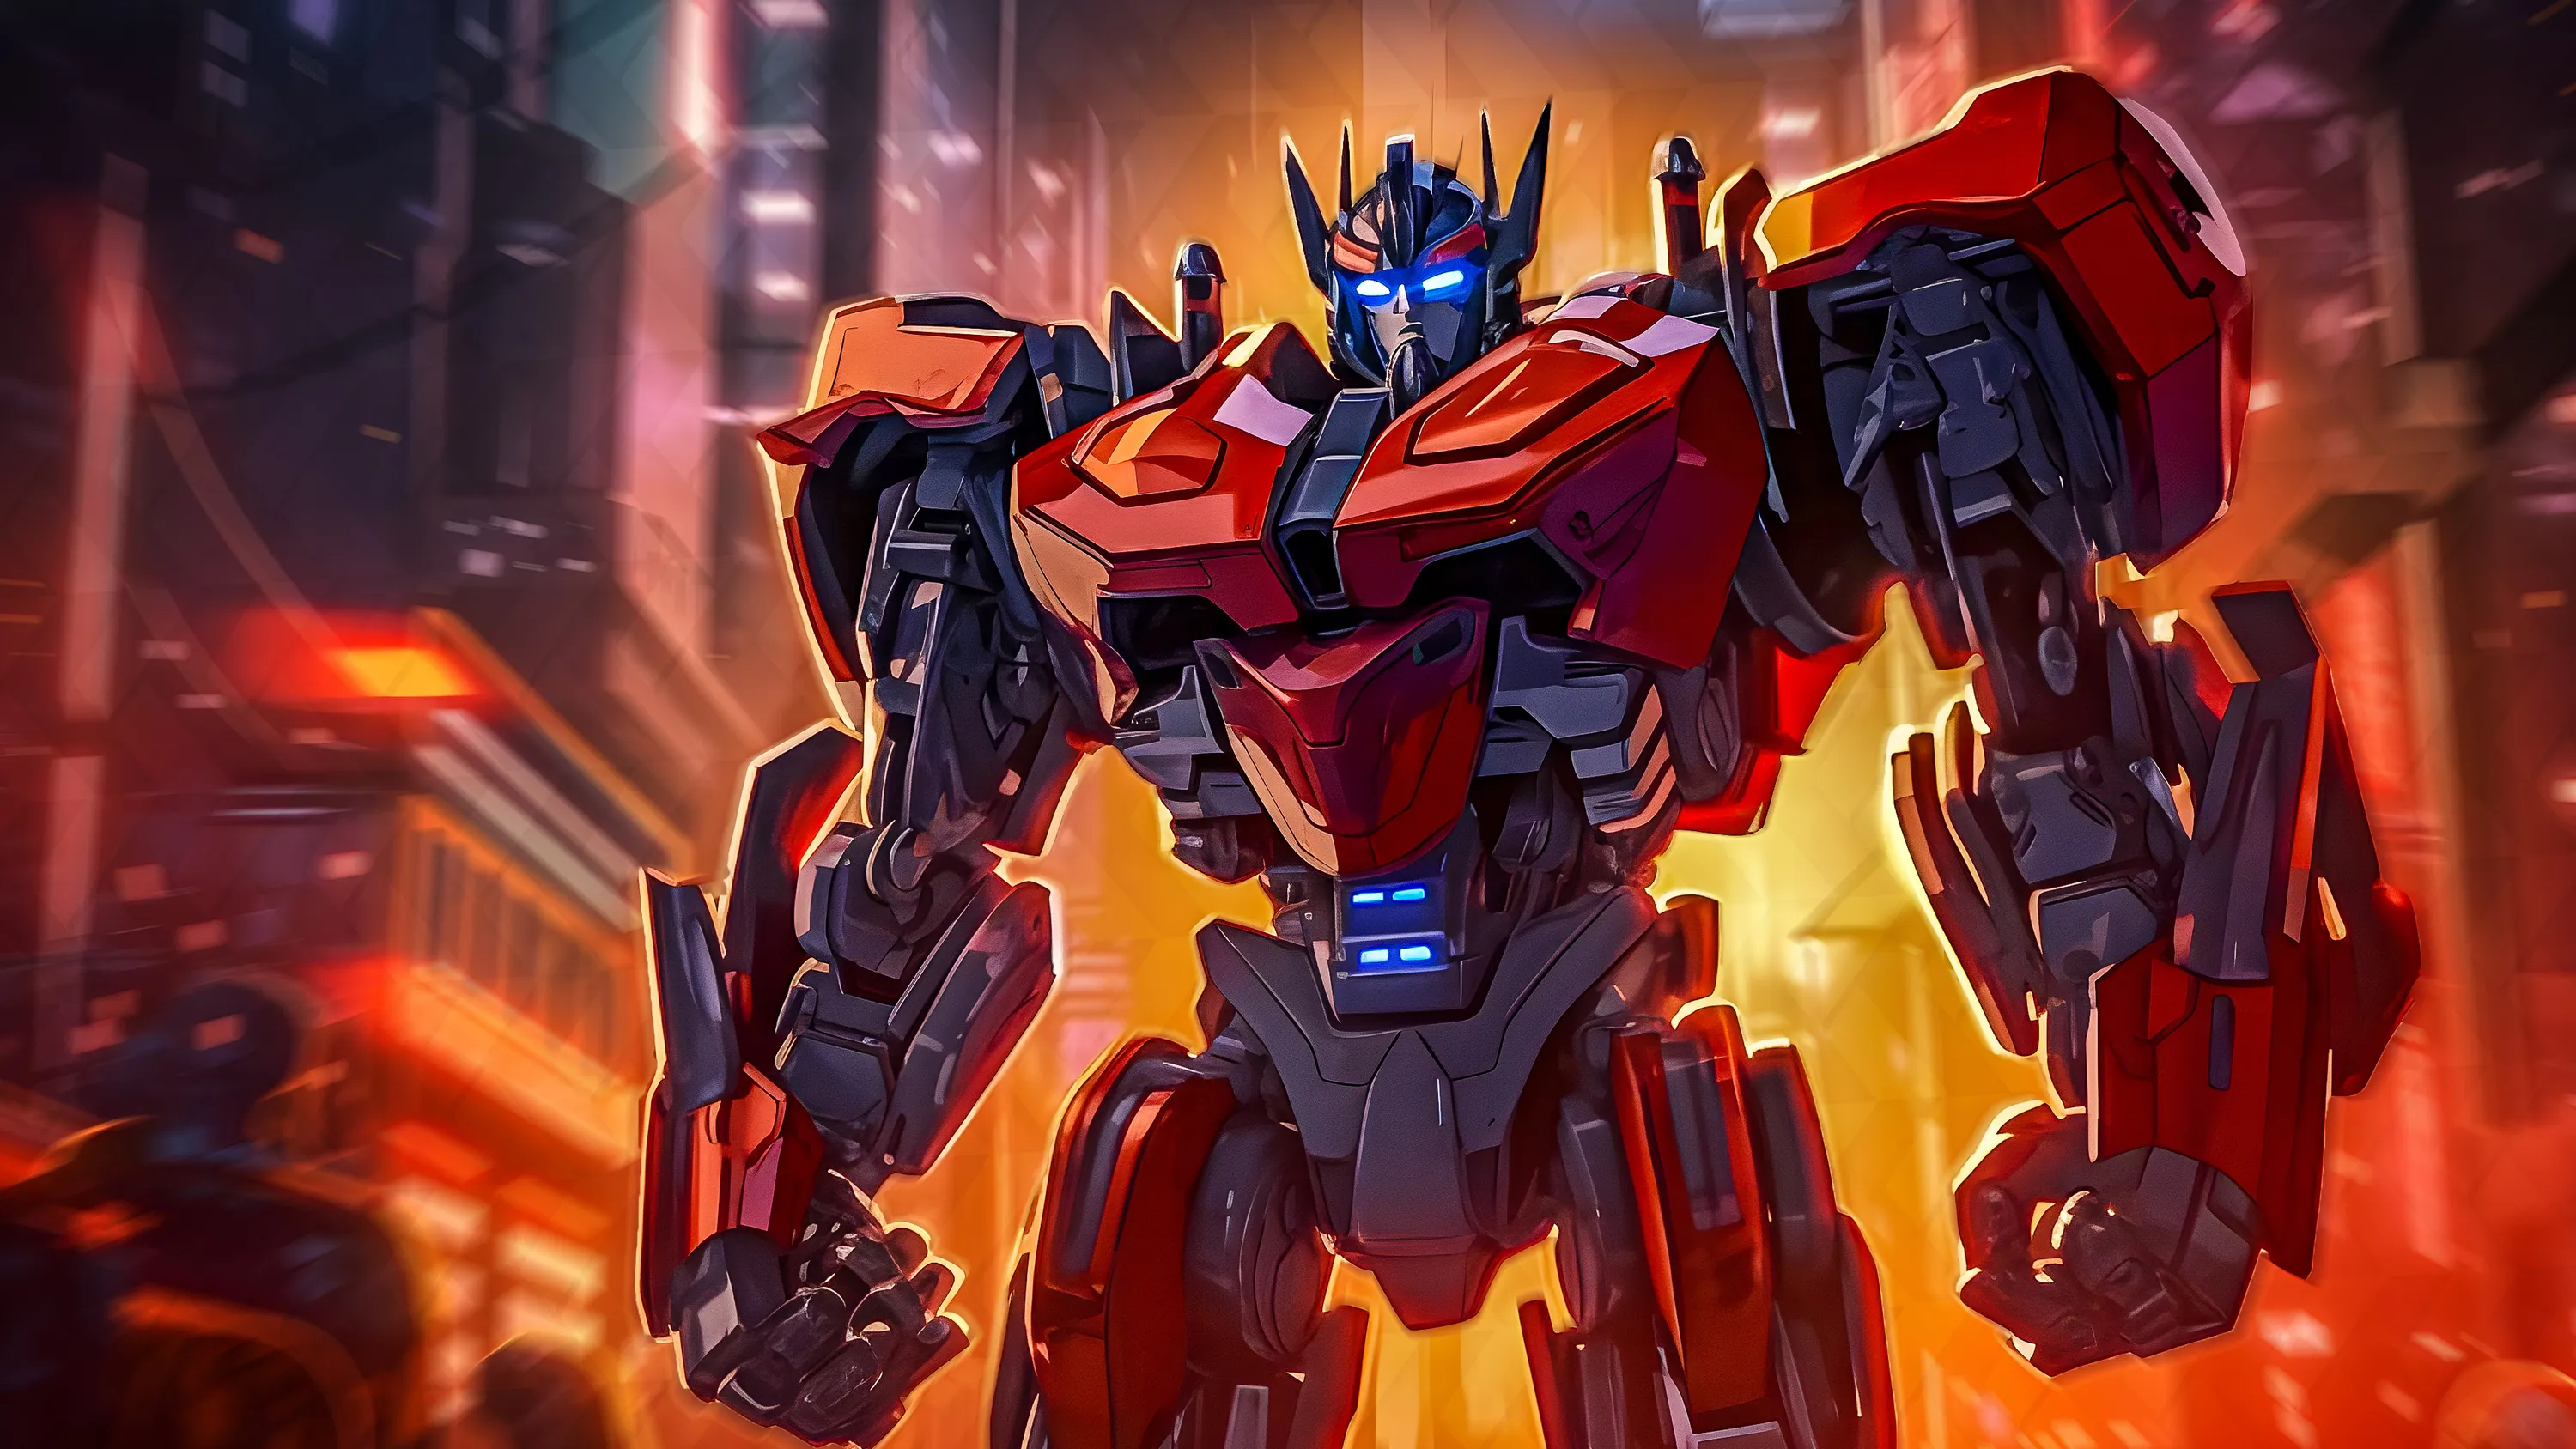 Transformers One Movie Preview - Movie & Show News | KinoCheck